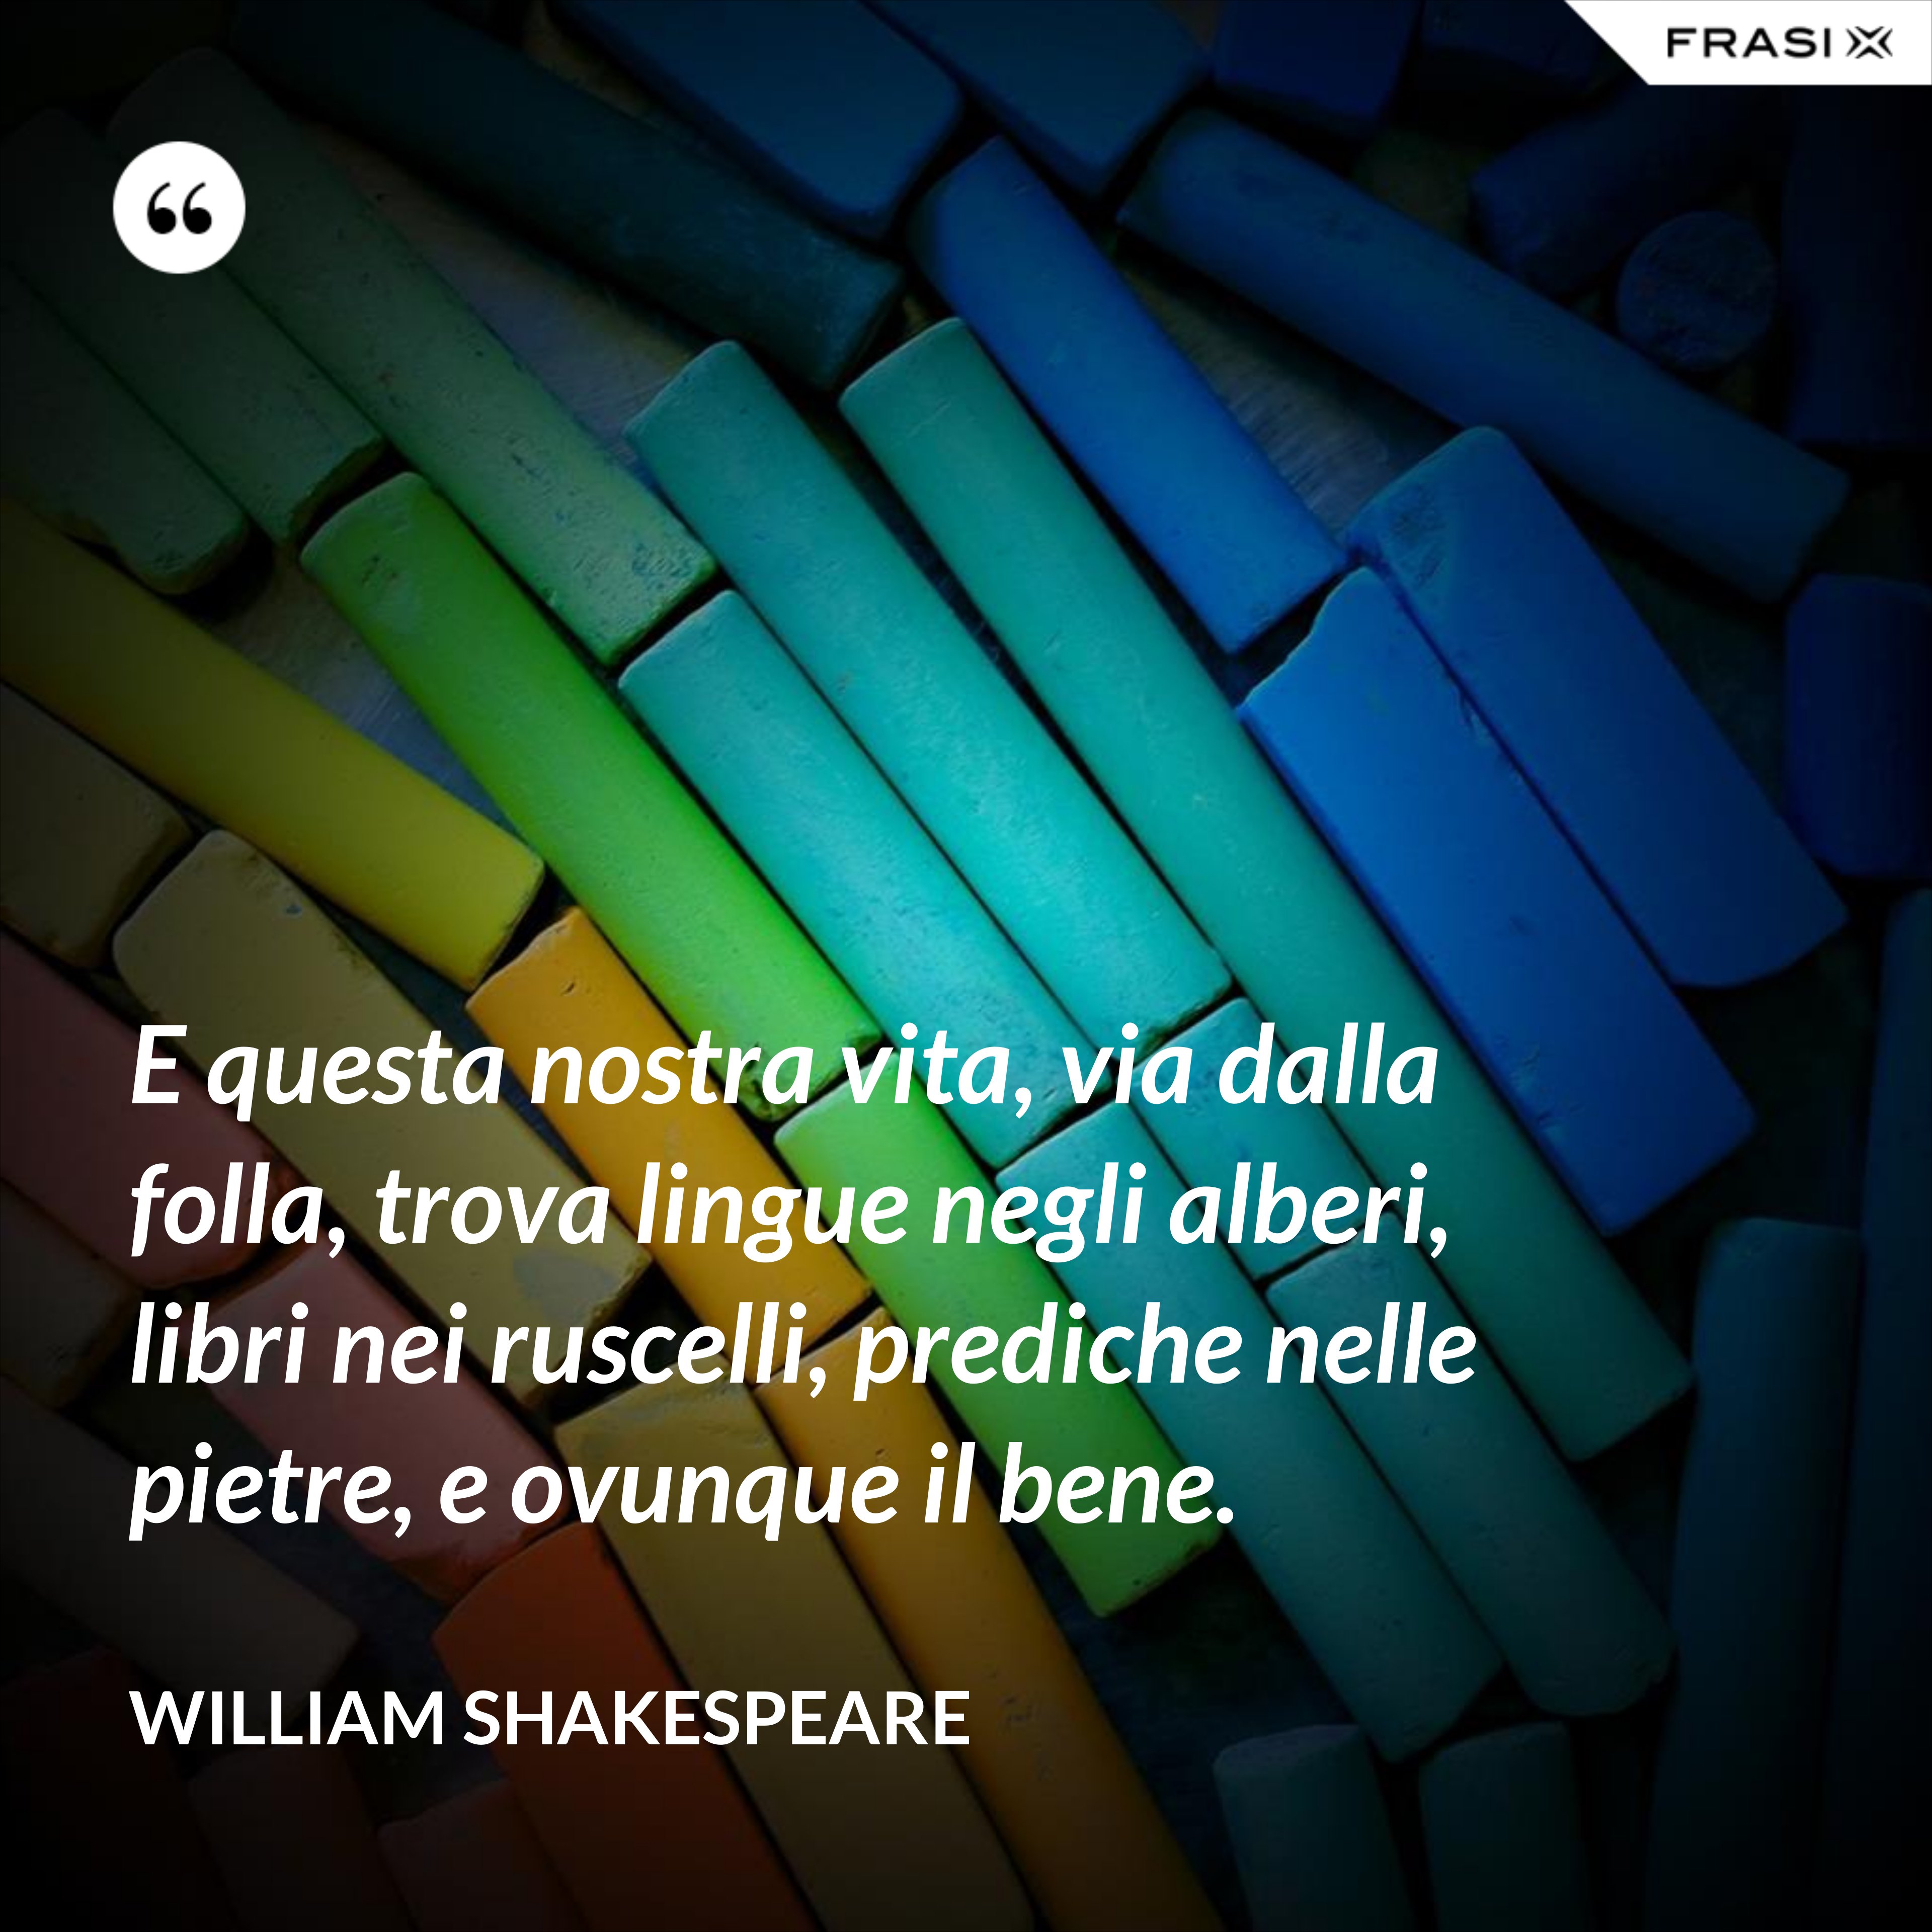 E questa nostra vita, via dalla folla, trova lingue negli alberi, libri nei ruscelli, prediche nelle pietre, e ovunque il bene. - William Shakespeare